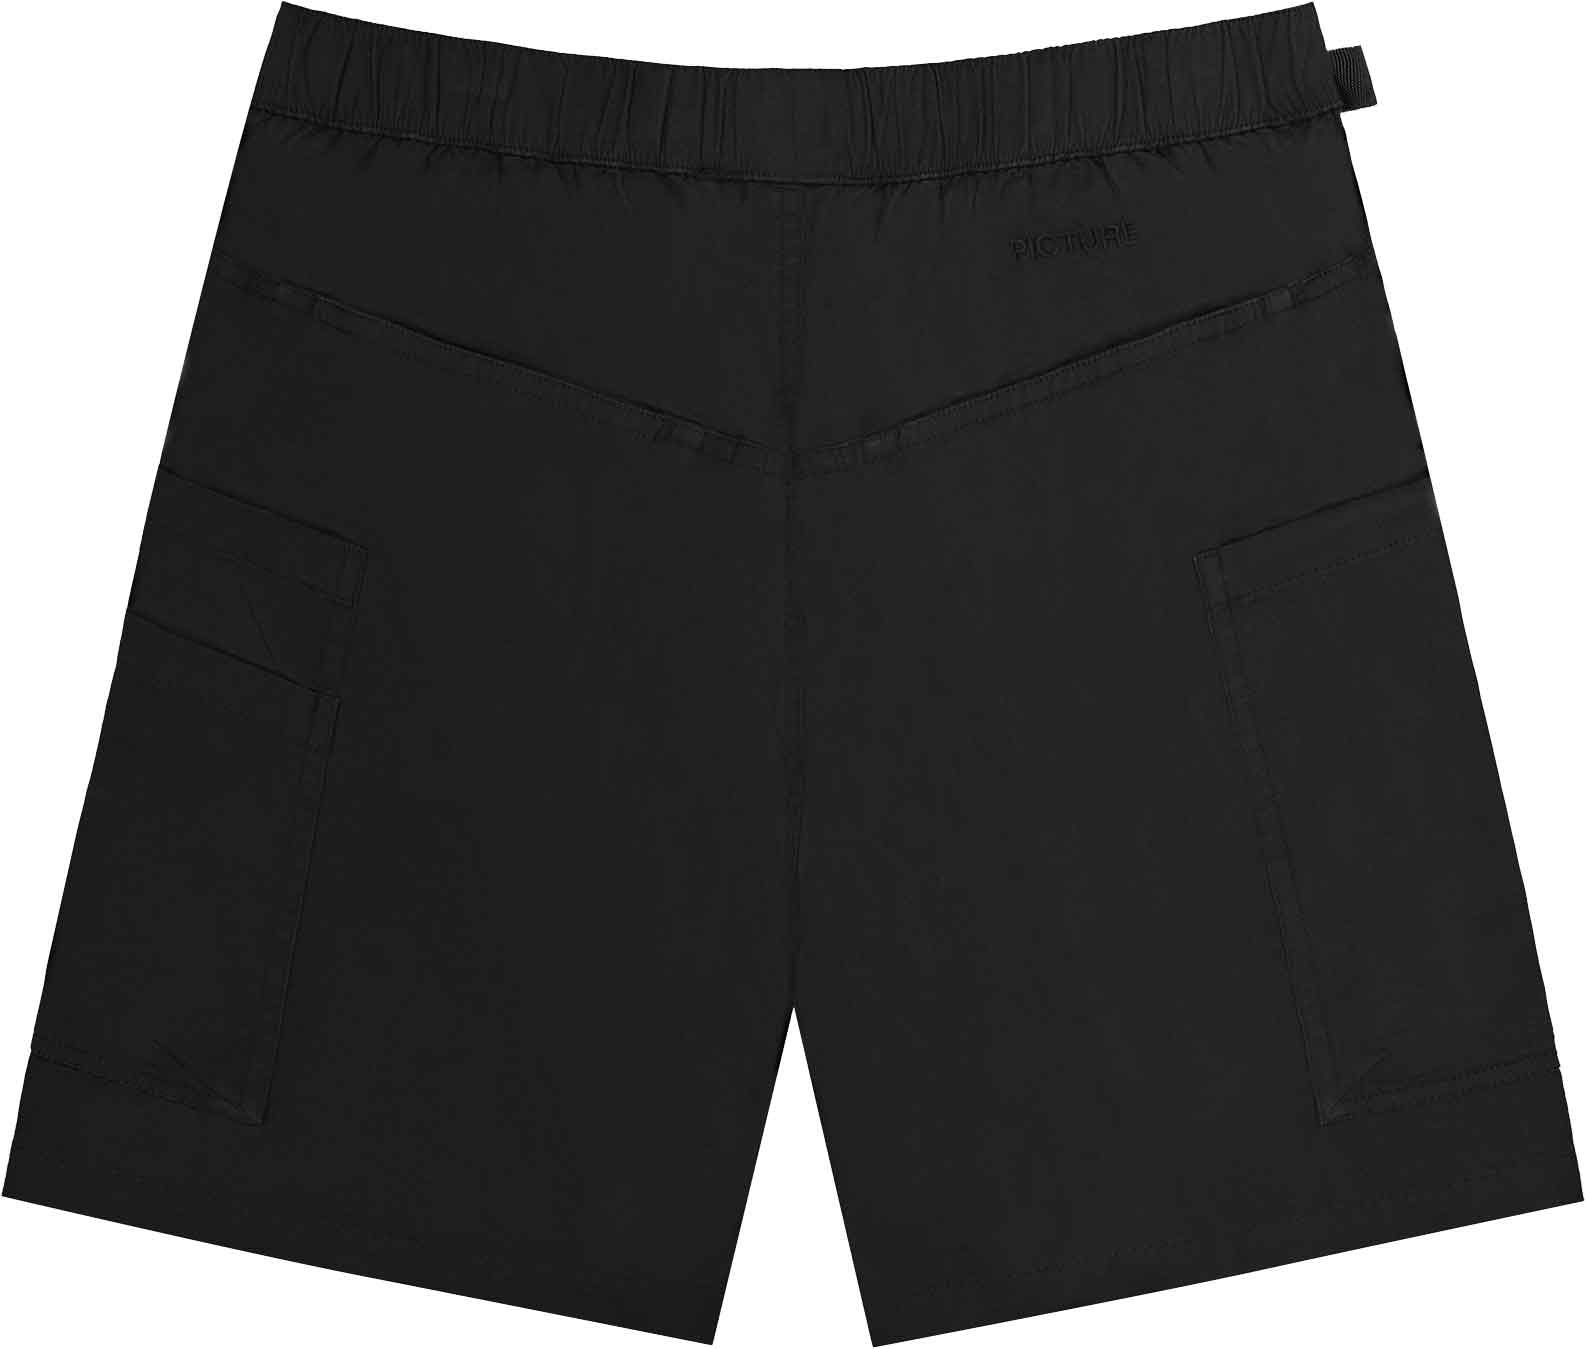 Men's Koriak Shorts